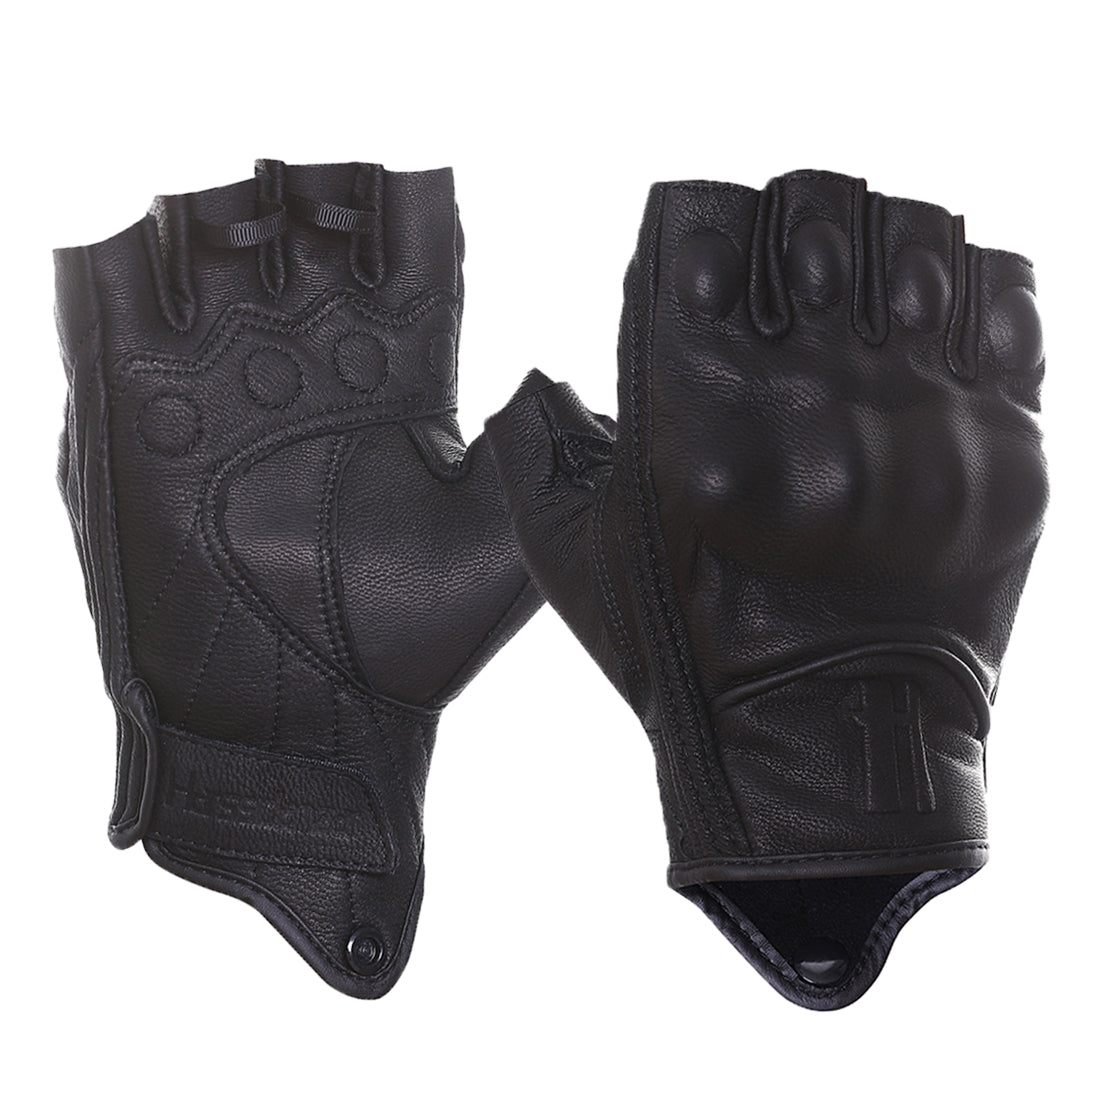 Ladies Fingerless Gloves – M 'n' C Motorcycle Apparel & Accessories